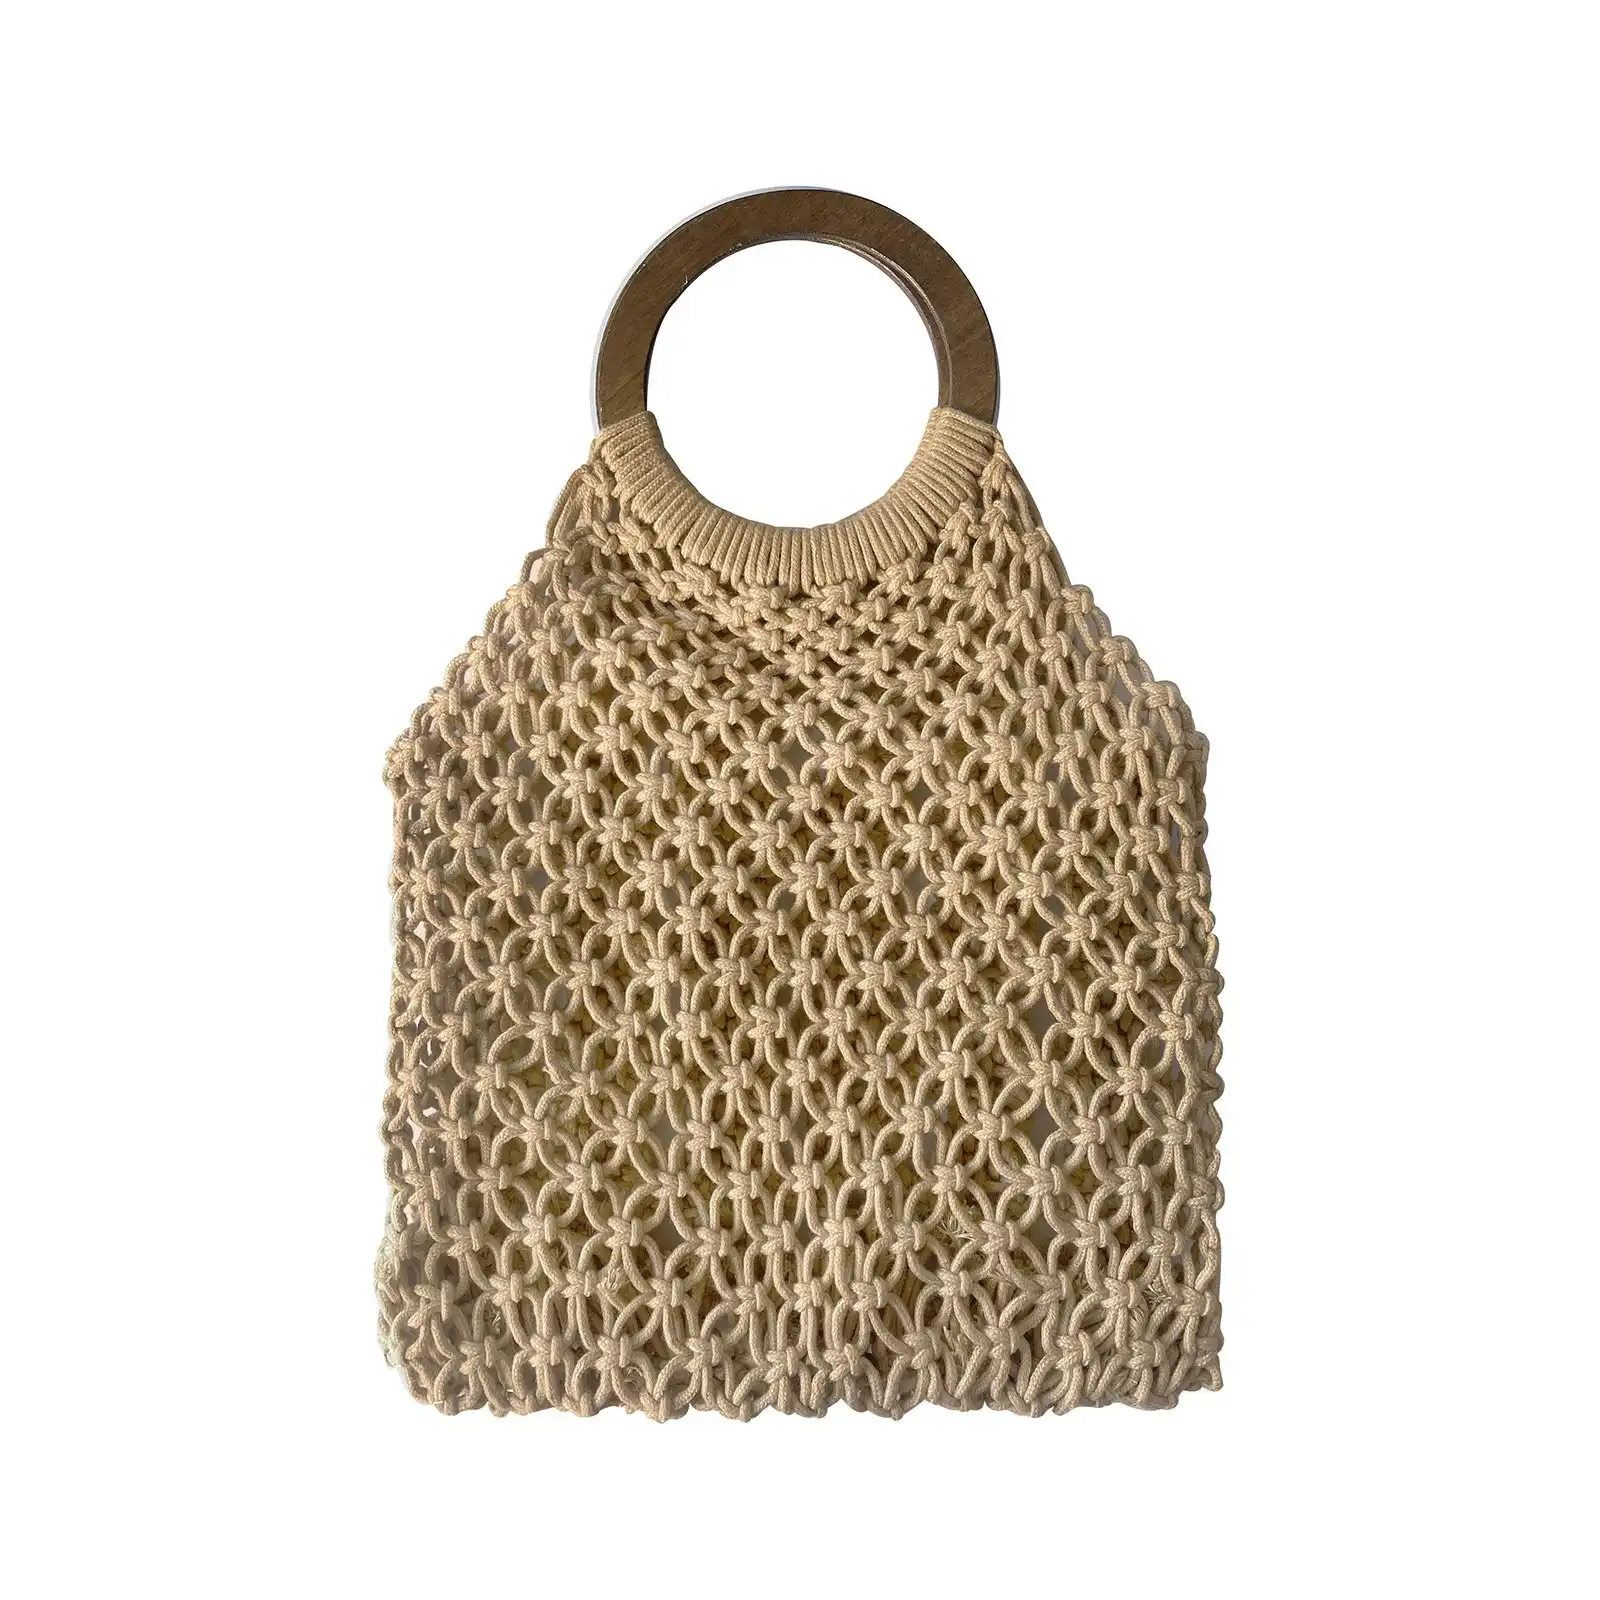 Culturesse Elowen Natural Woven 43.5cm Netting Bag Women's Fashion Handbag Tan